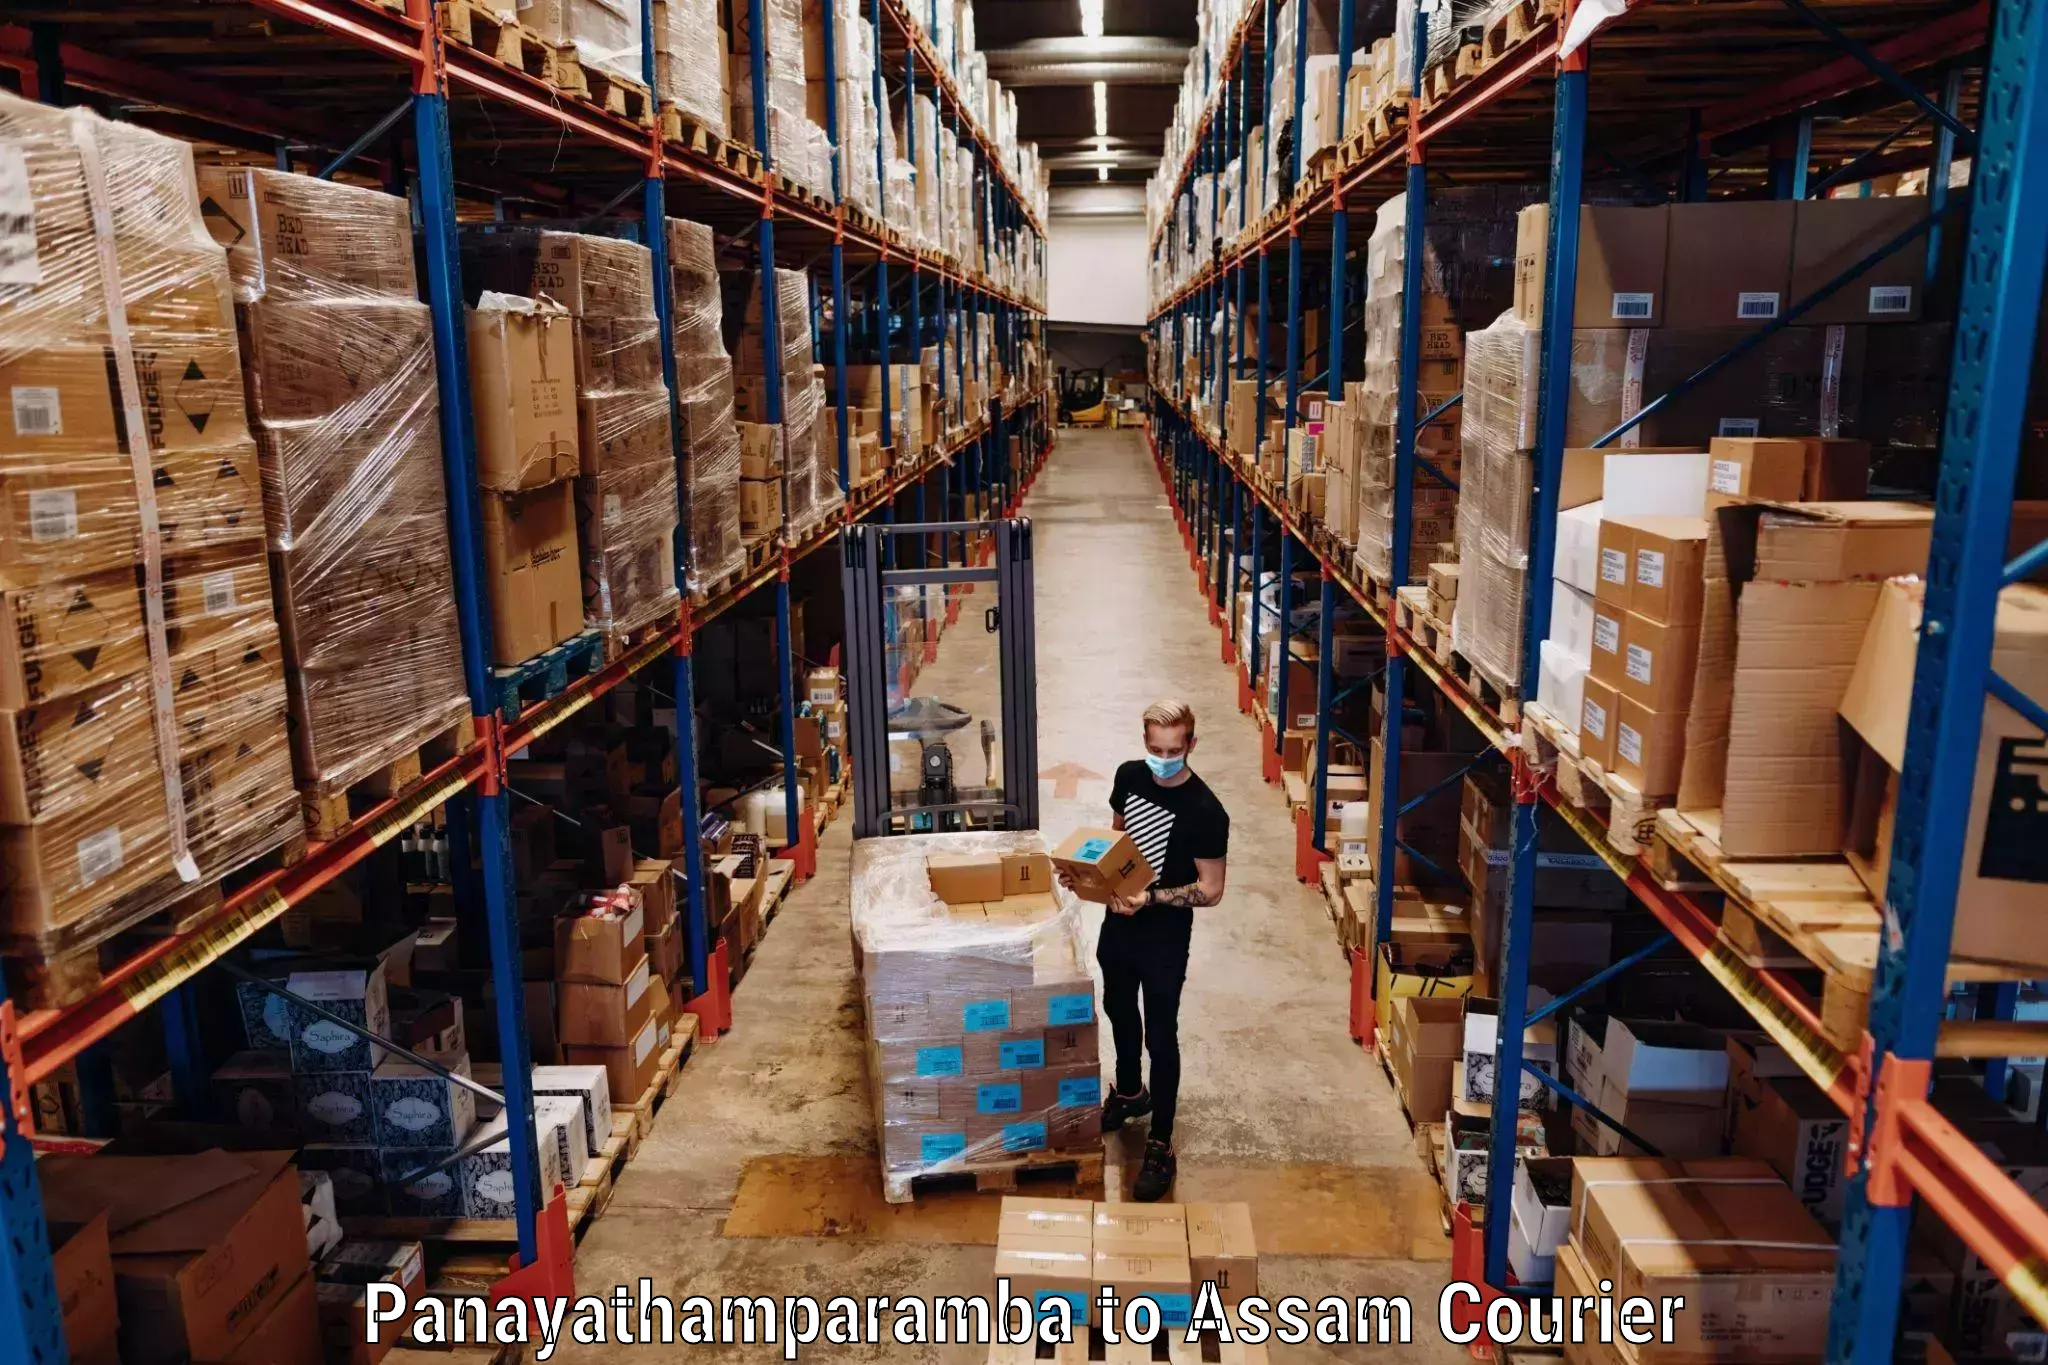 Luggage transport company Panayathamparamba to Sonitpur